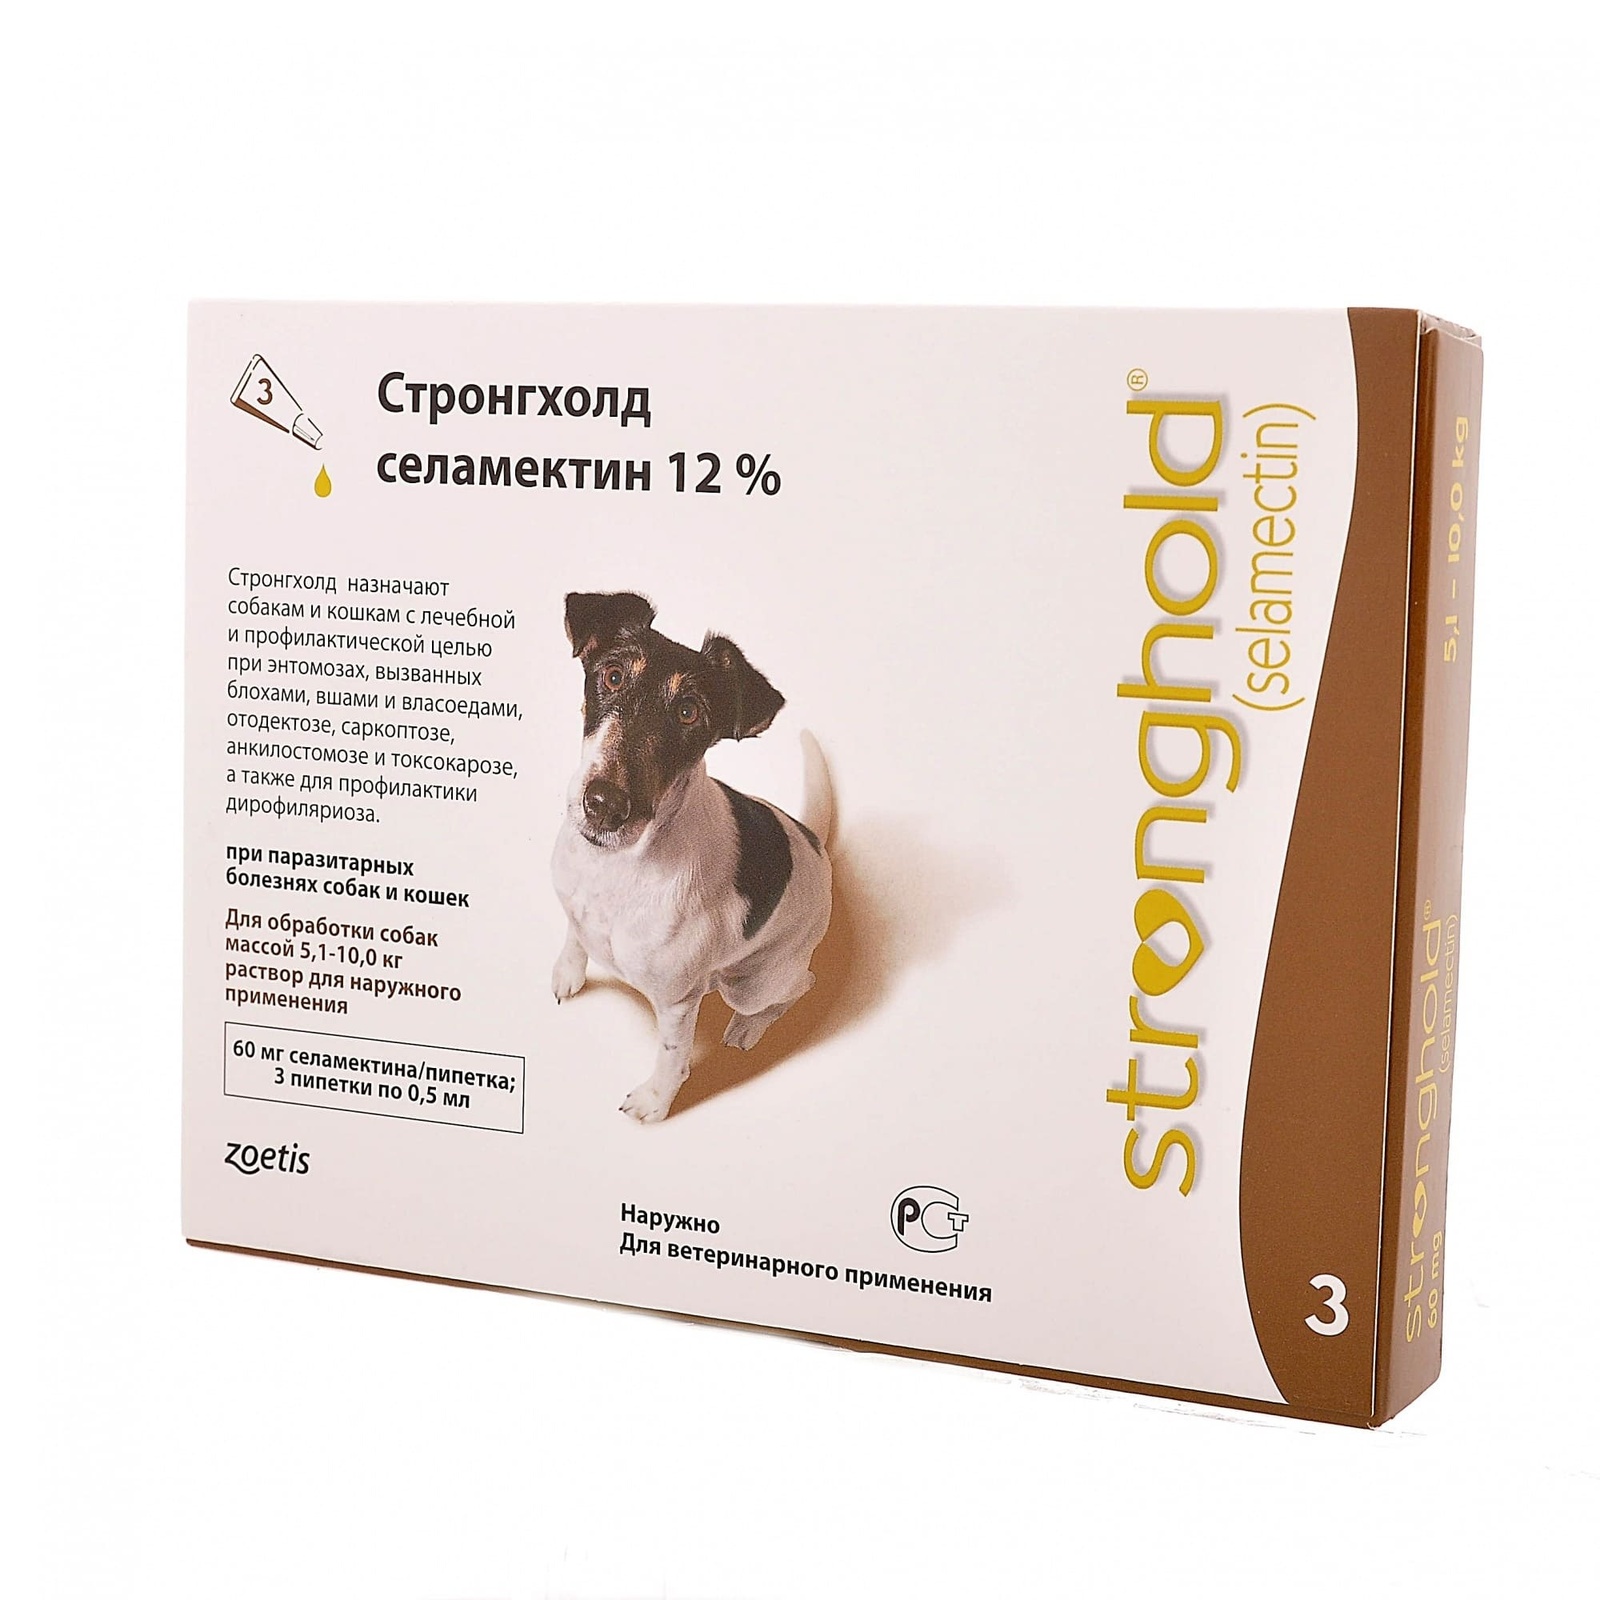 Zoetis стронгхолд, капли от наружных и внутренних паразитов для собак 5,1-10,0 кг, 3 пип/уп (10 г)